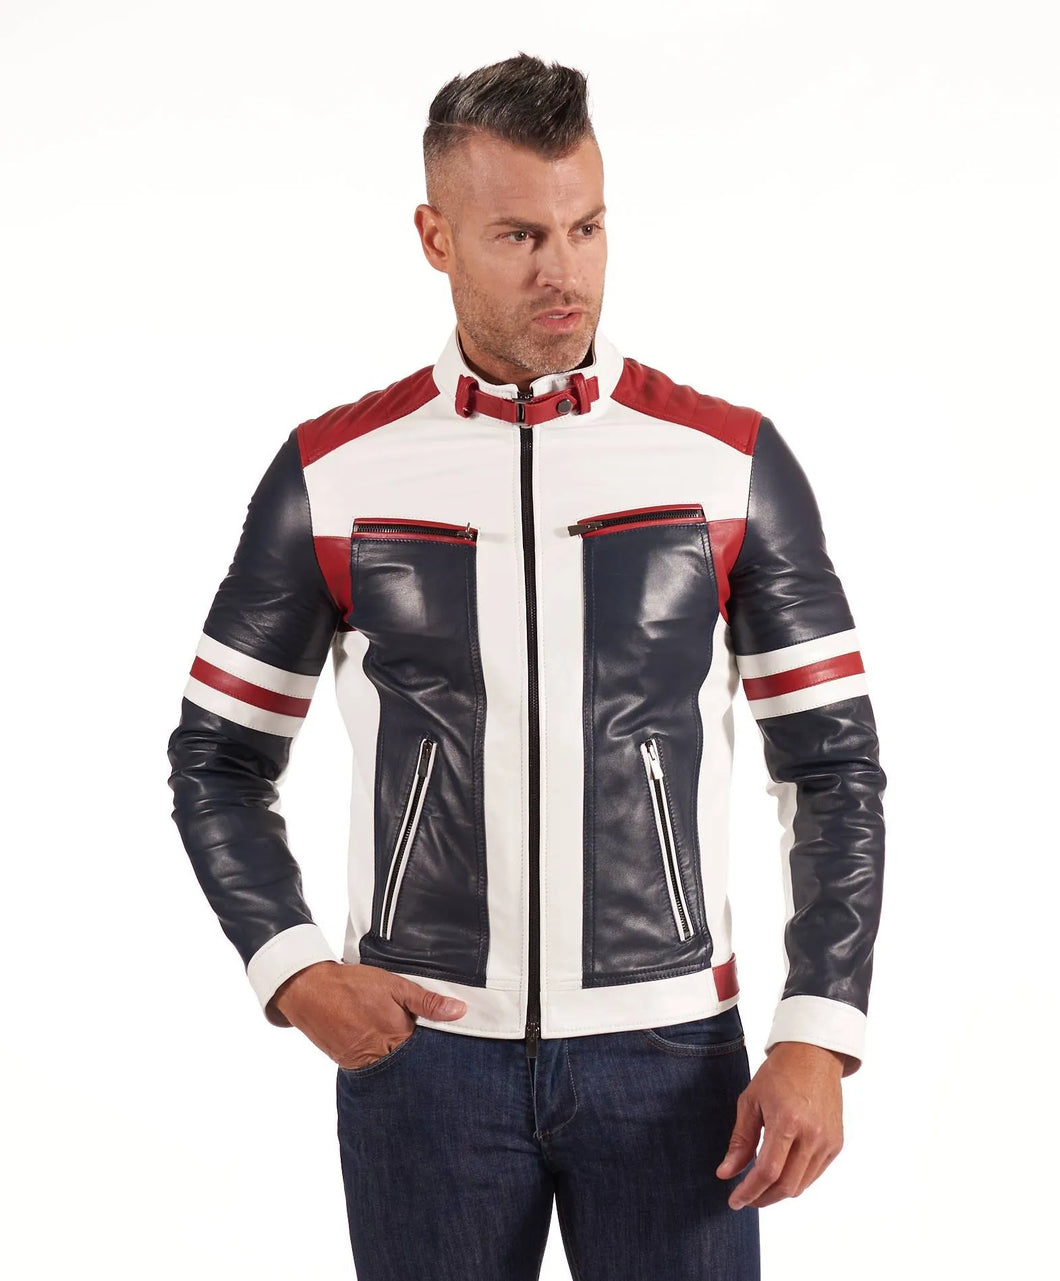 Men's Multi Color Biker Leather Jacket